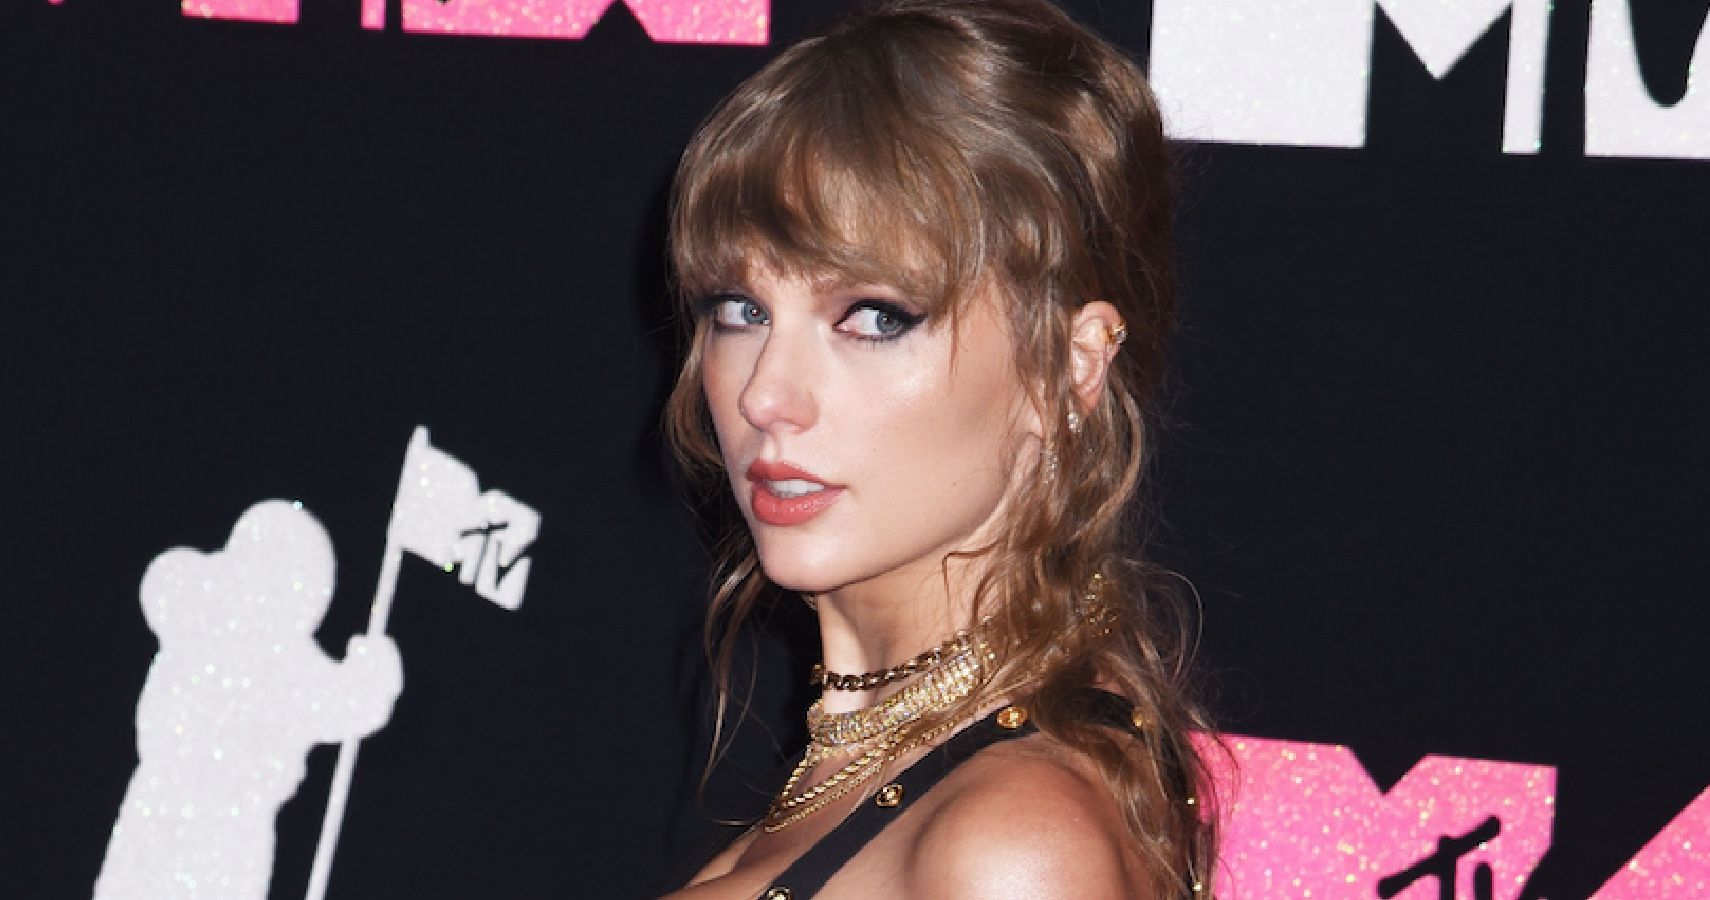 Taylor Swift at the MTV Awards 